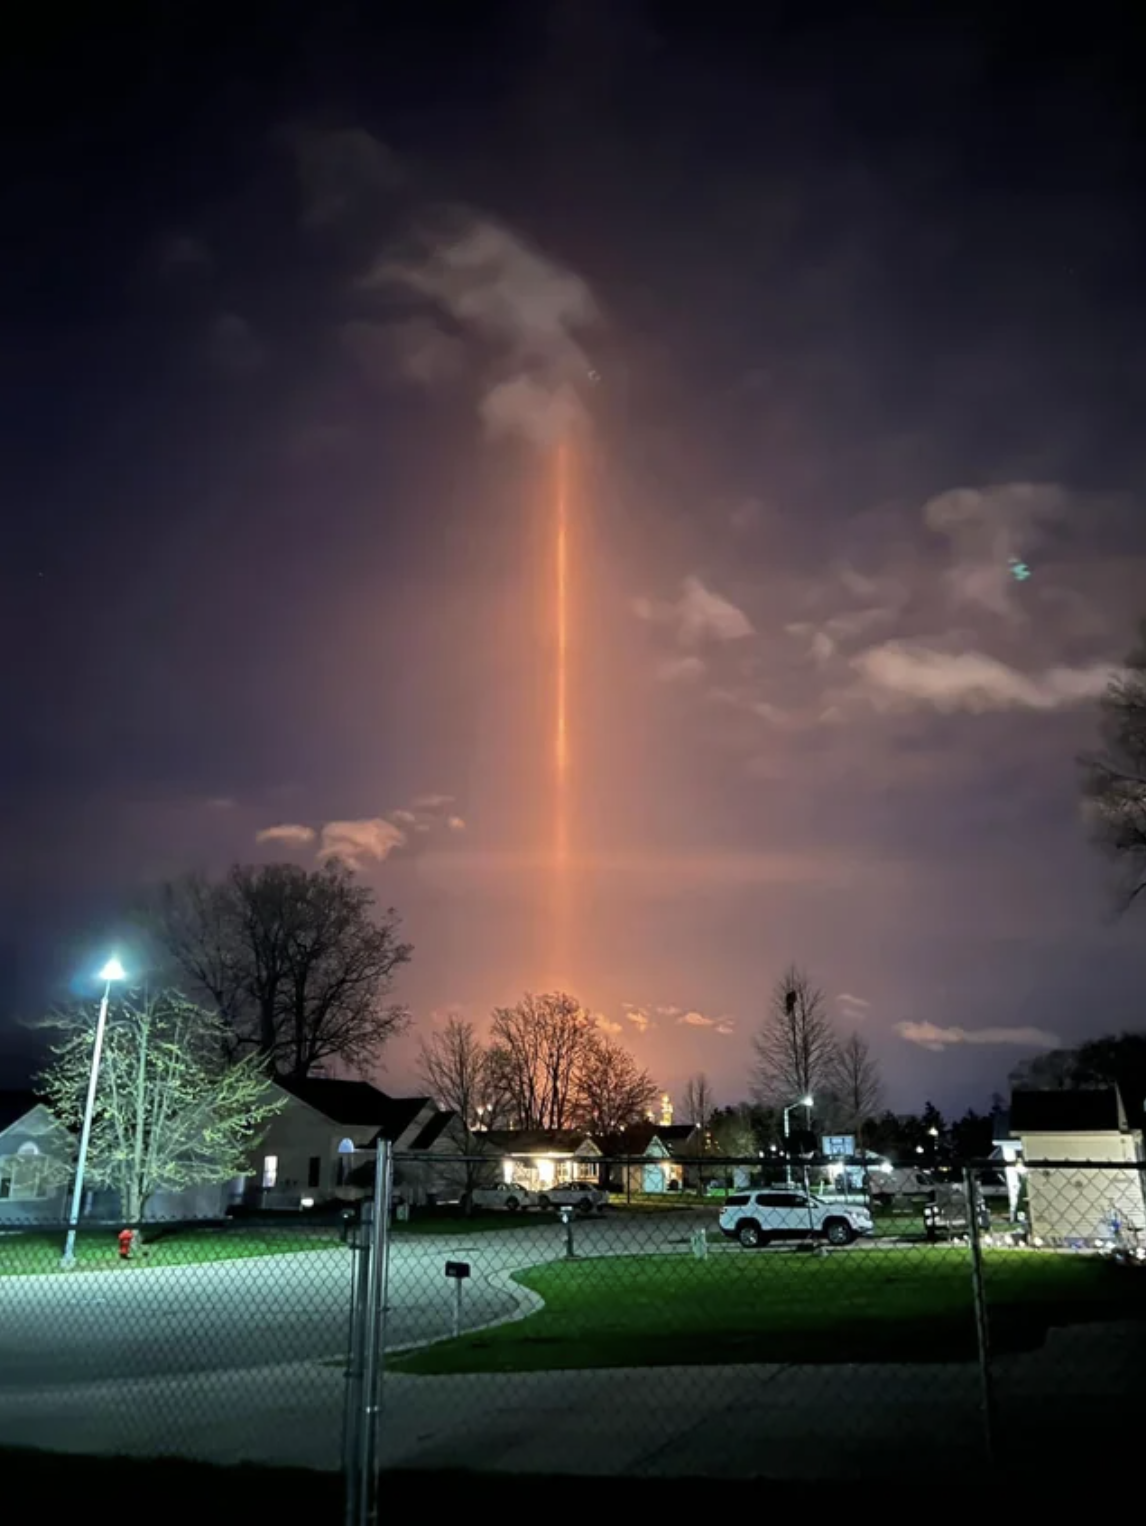 light beam seen from a suburban neighborhood